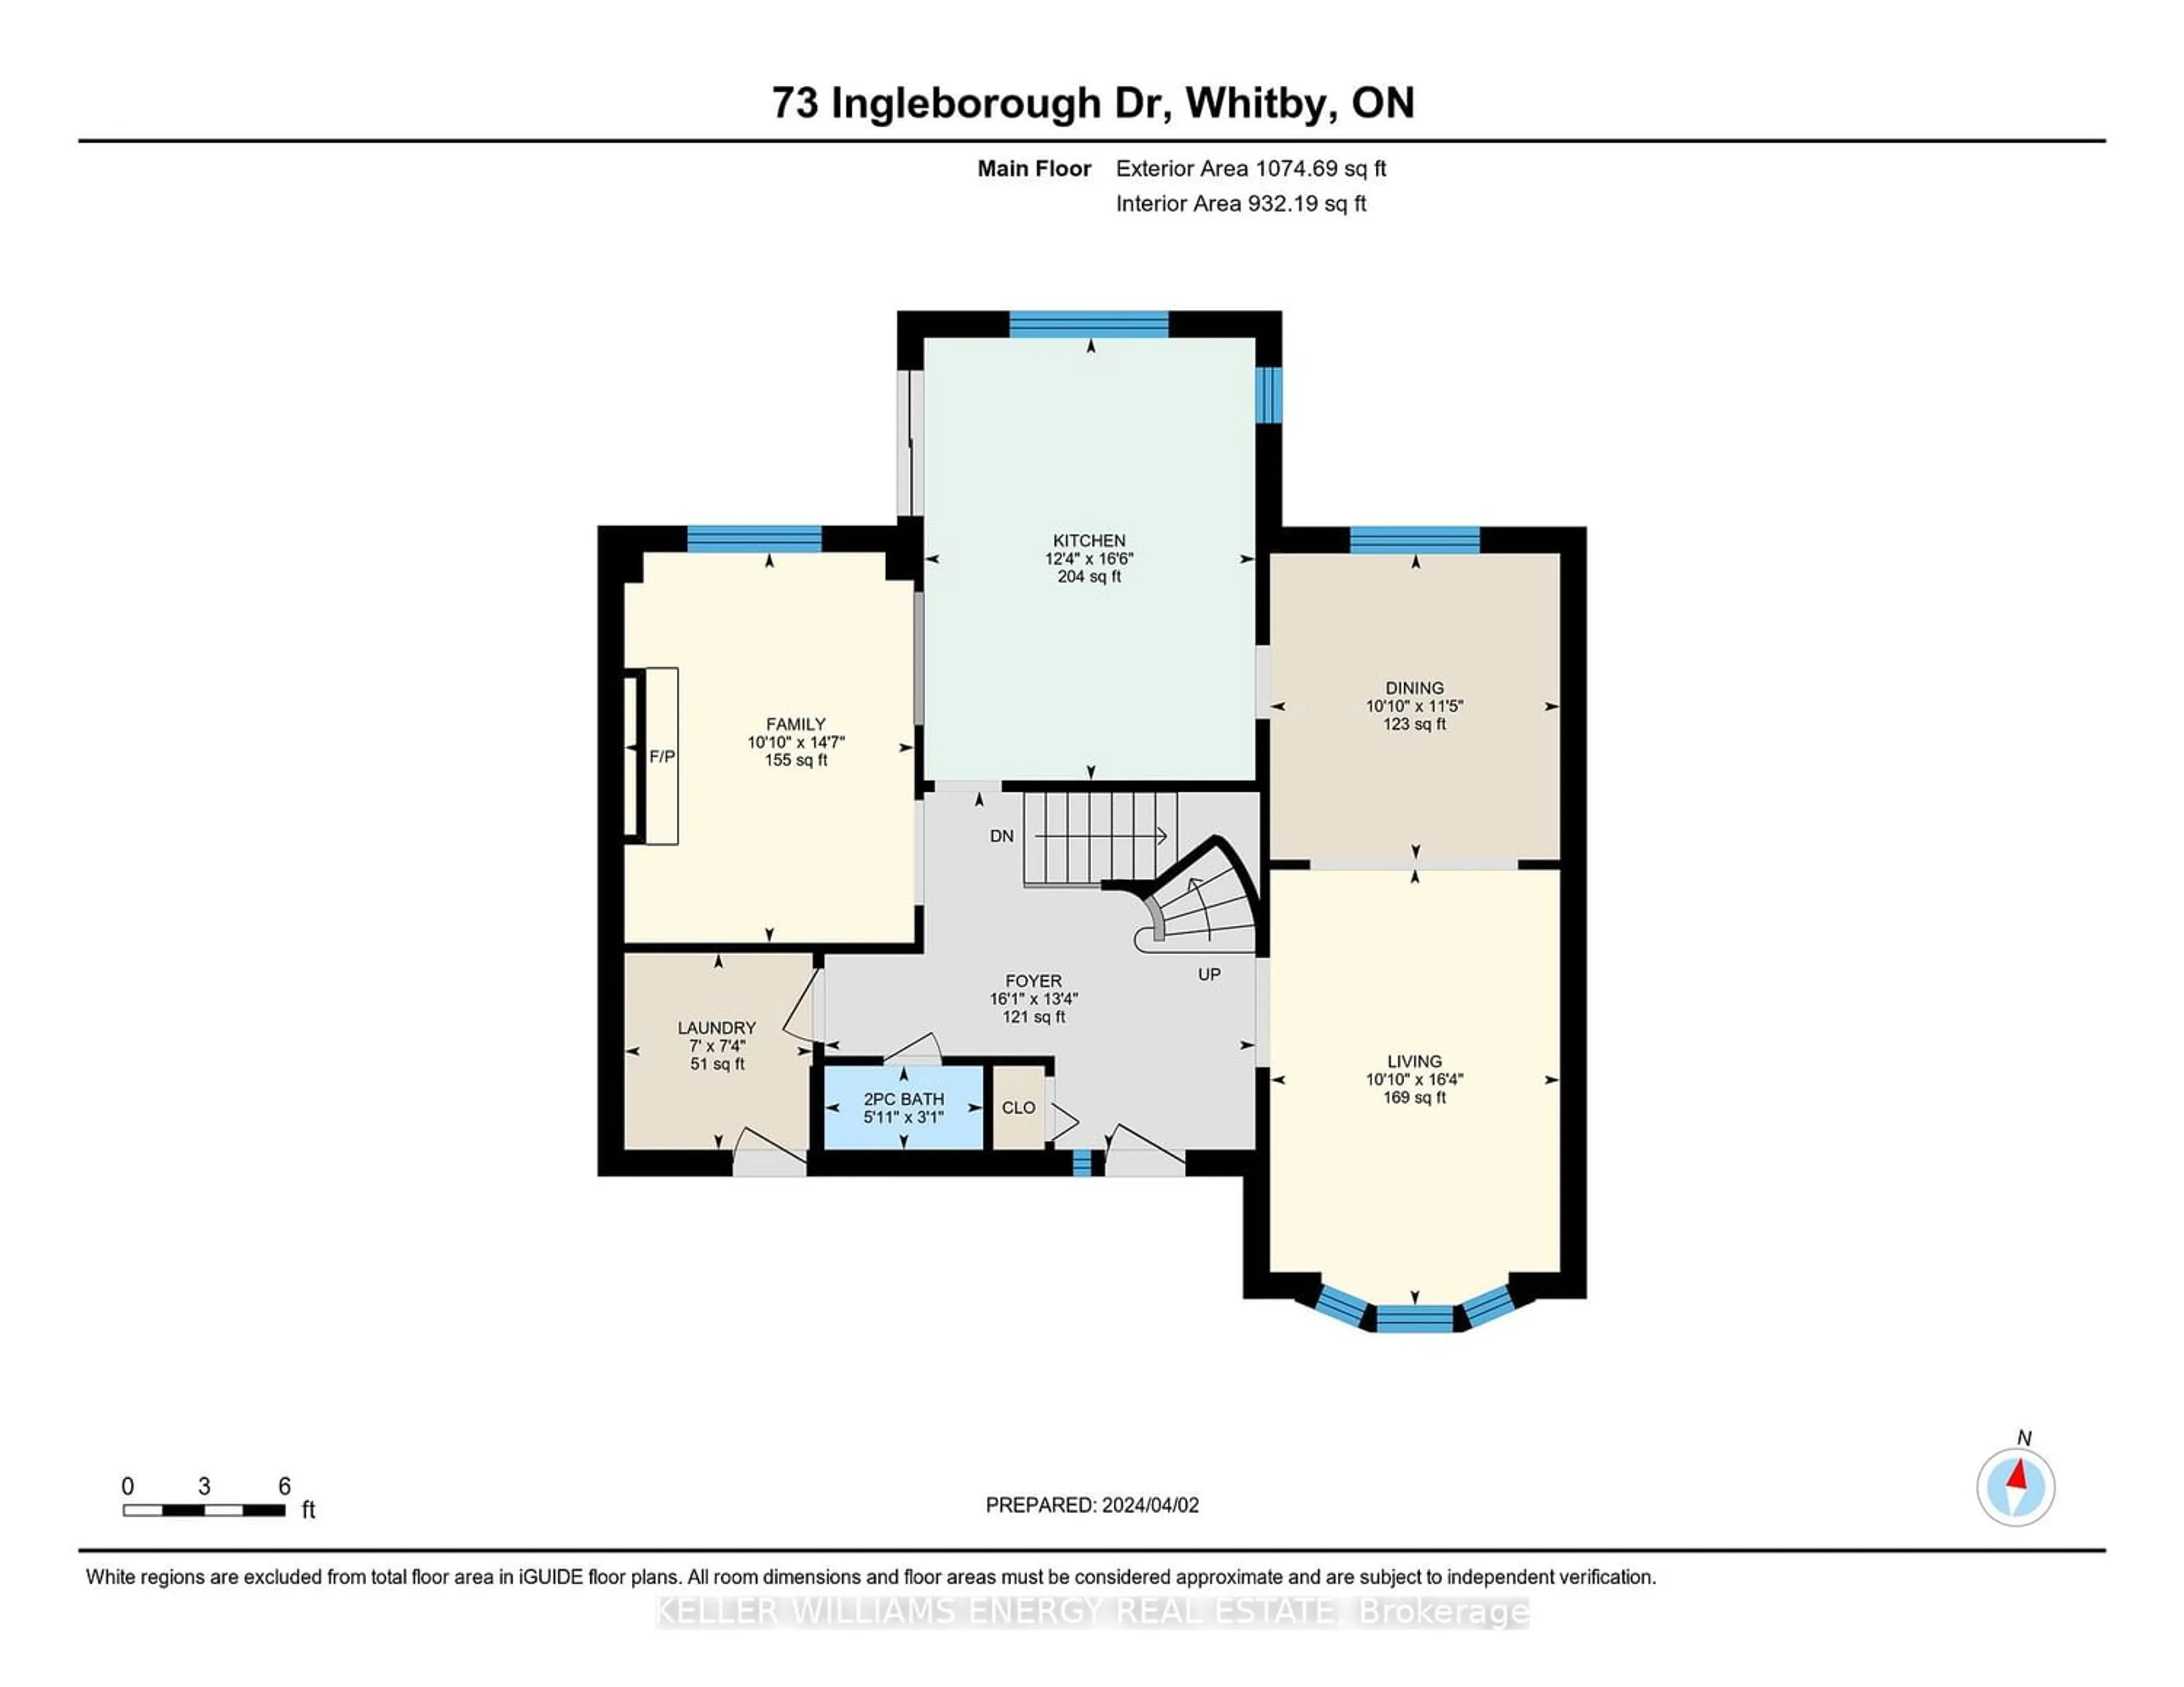 Floor plan for 73 Ingleborough Dr, Whitby Ontario L1N 8J4